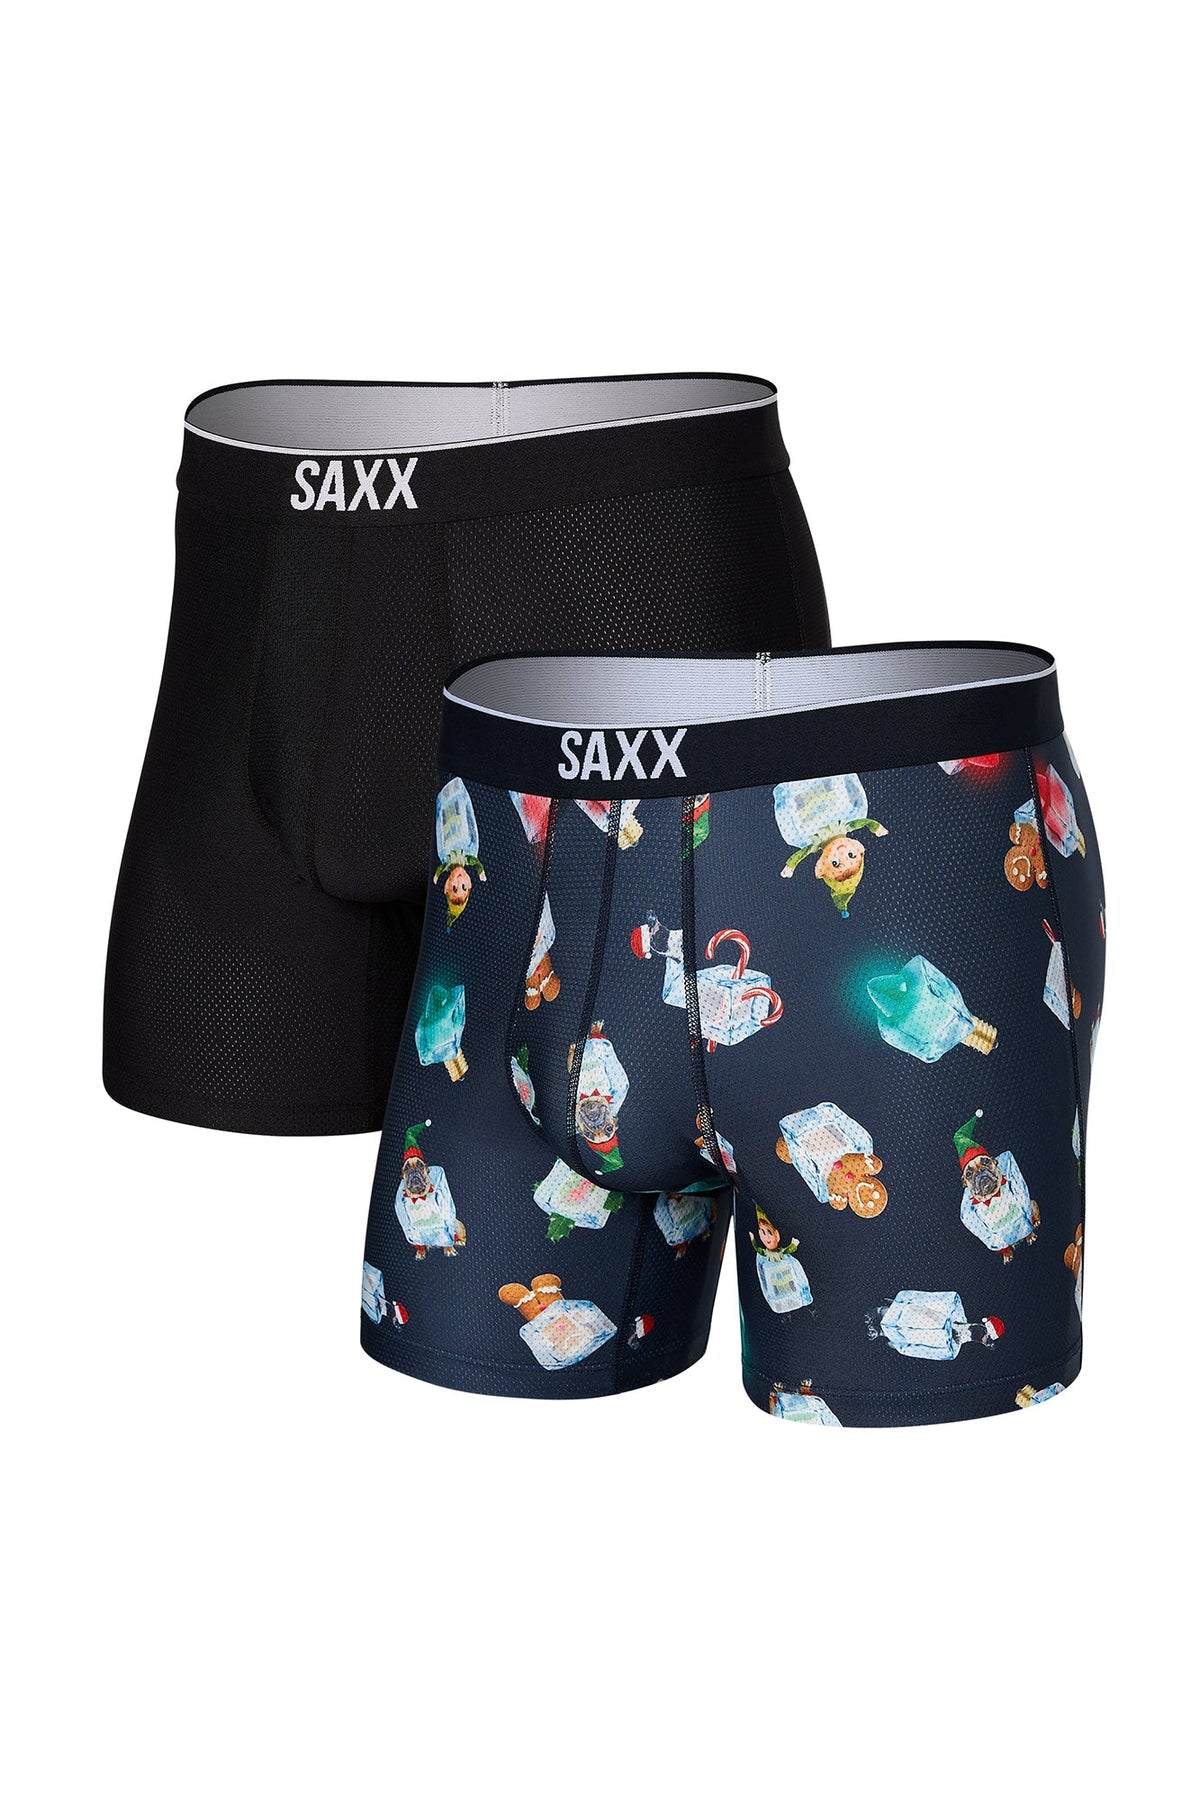 Paquet de 2 boxers pour homme par Saxx | Volt SXPP2T HIB | Machemise.ca, vêtements mode pour hommes